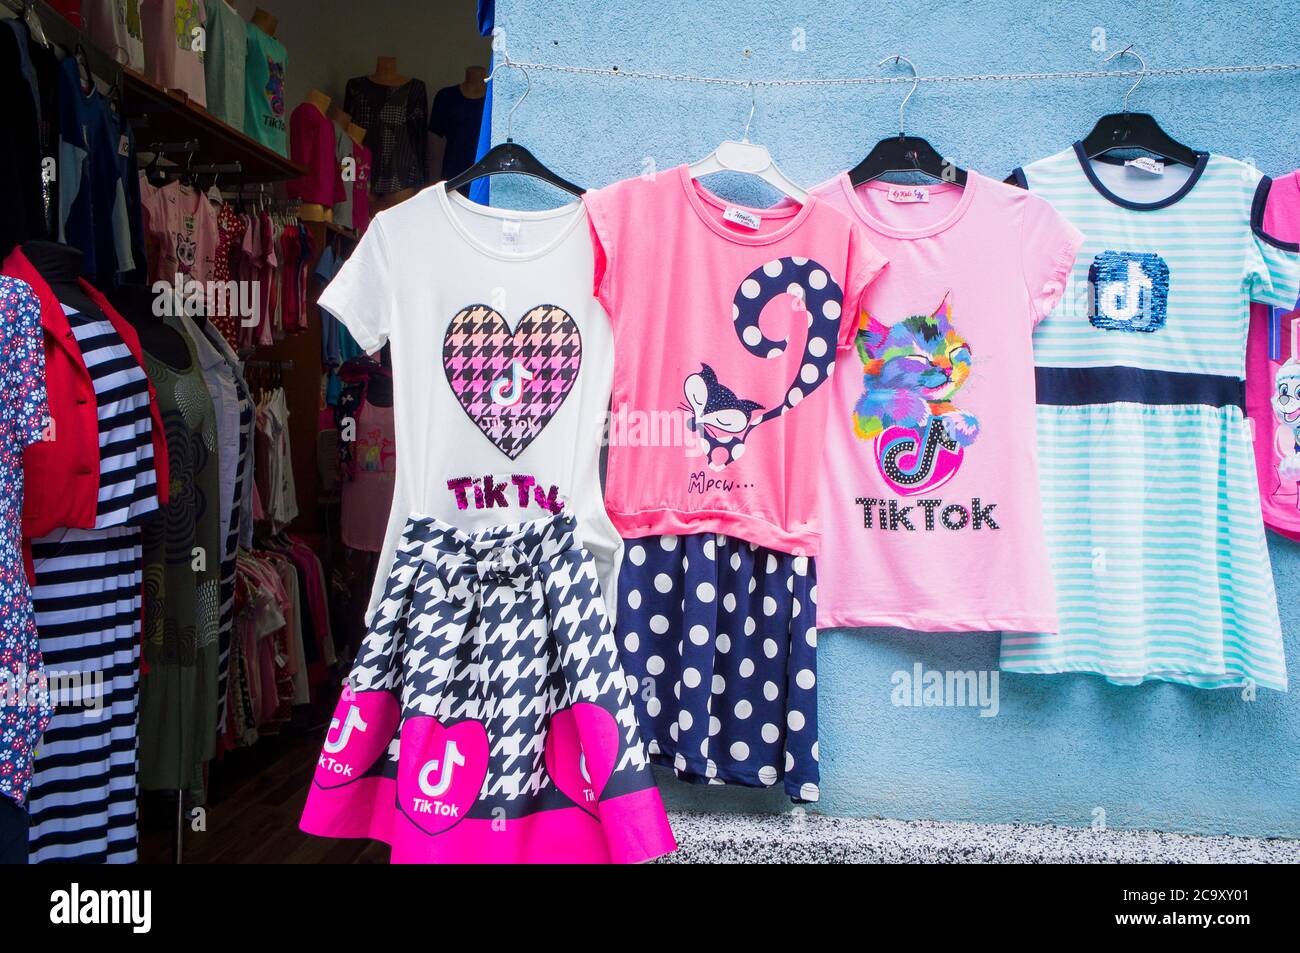 Kleine Mädchen Kleidung, T-Shirt mit TikTok, Tik Tok schreiben, Kind,  kindisch, mädchenhaft, in einem Geschäft in Luhacovice Spa, Zlin Region,  Tschechische Republik, 1. Juli Stockfotografie - Alamy